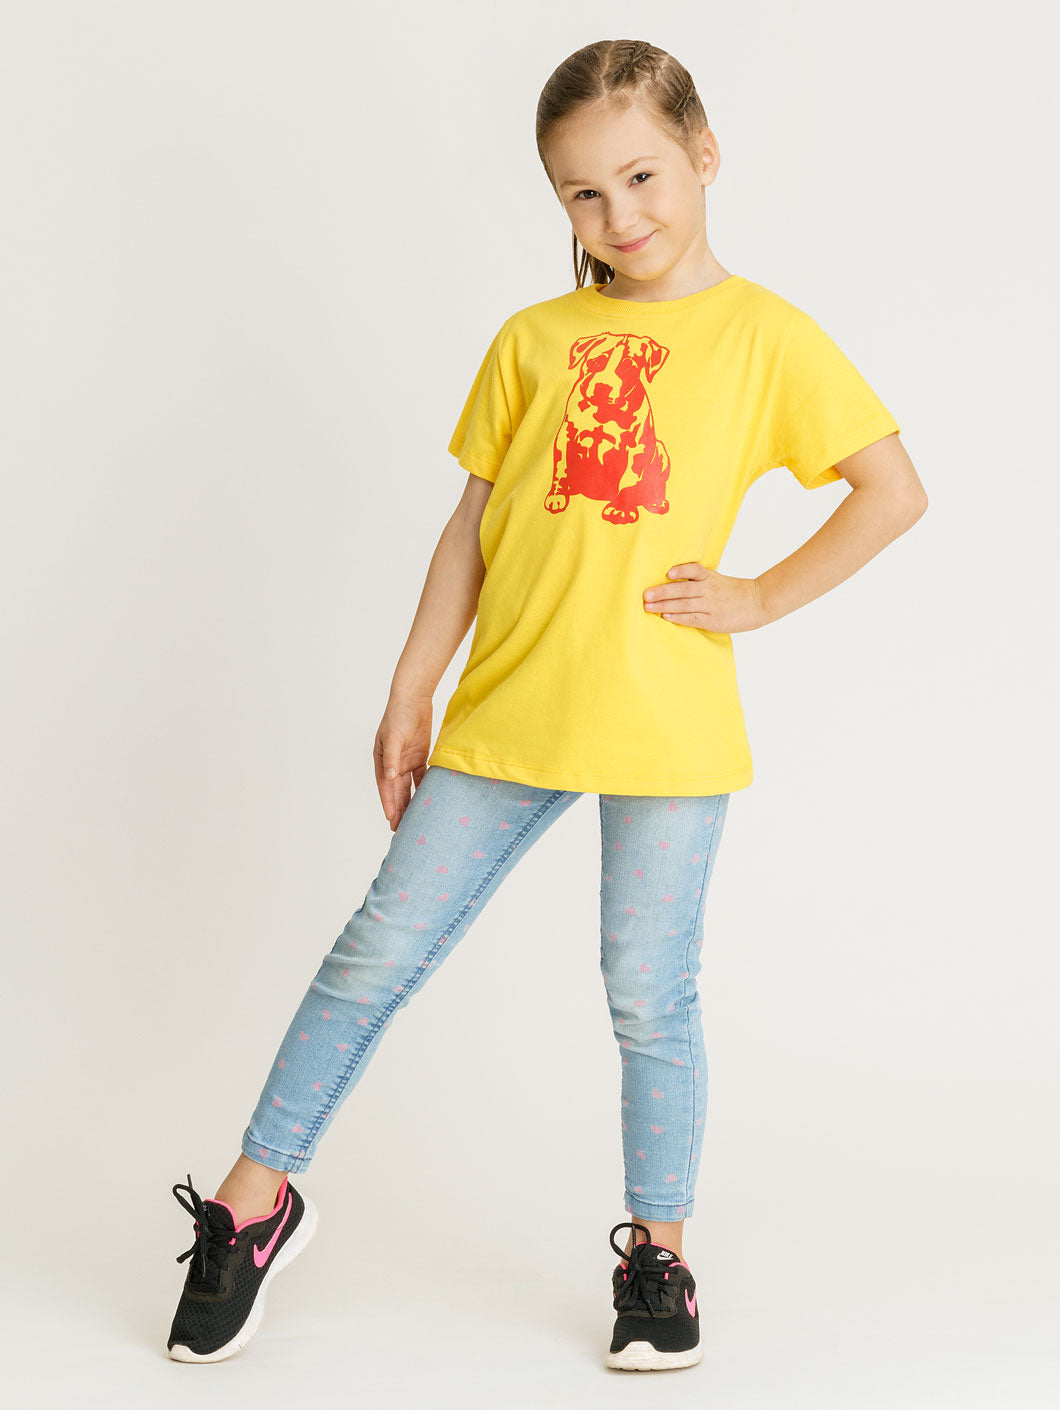 Babystaff Kids Logo T-Shirt gelb - 2